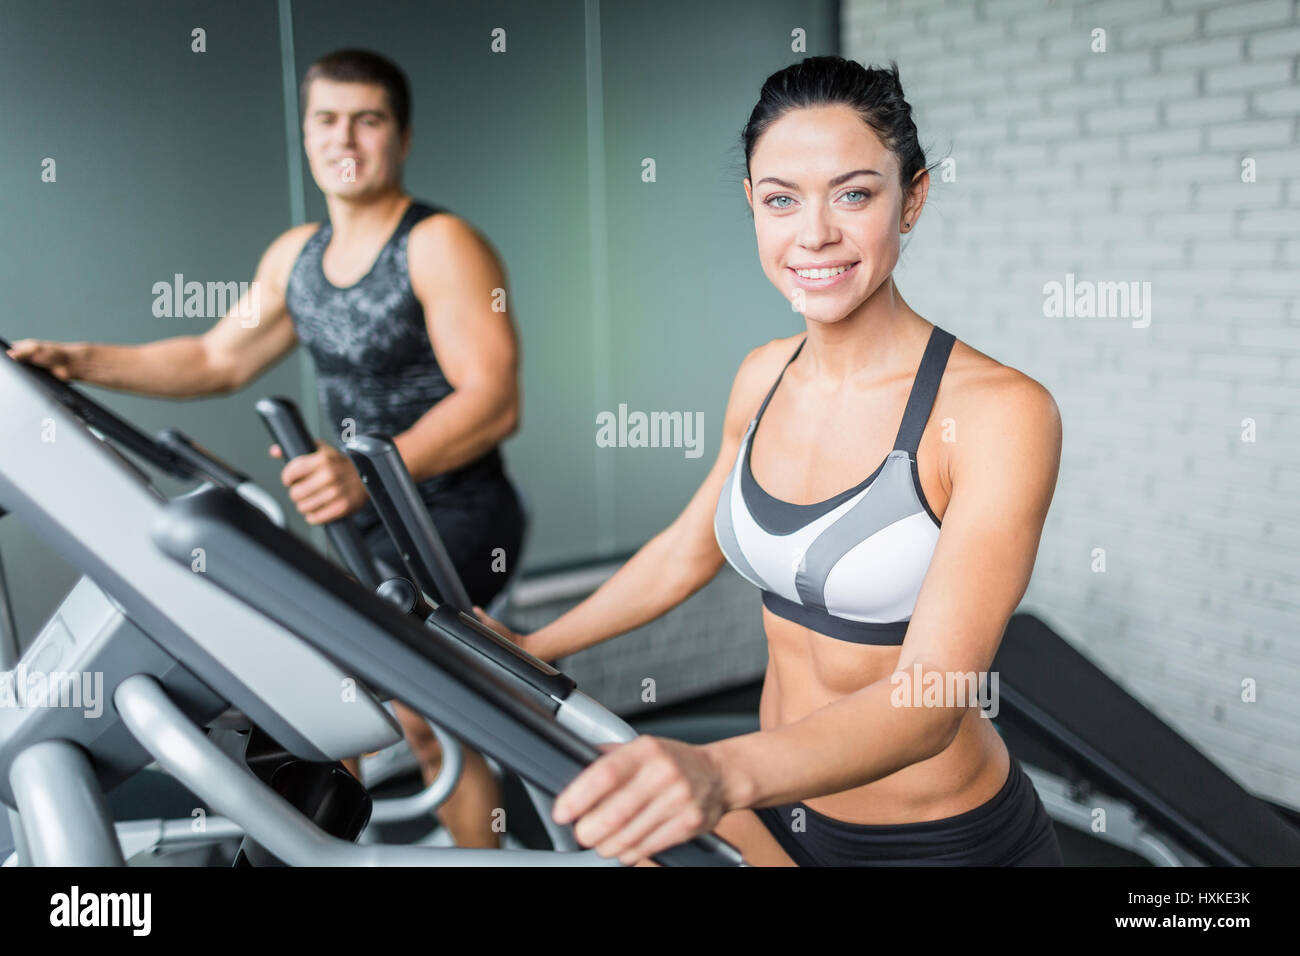 Lächelnde Menschen Fitness Working Out auf Maschinen im Fitness-Studio Stockfoto